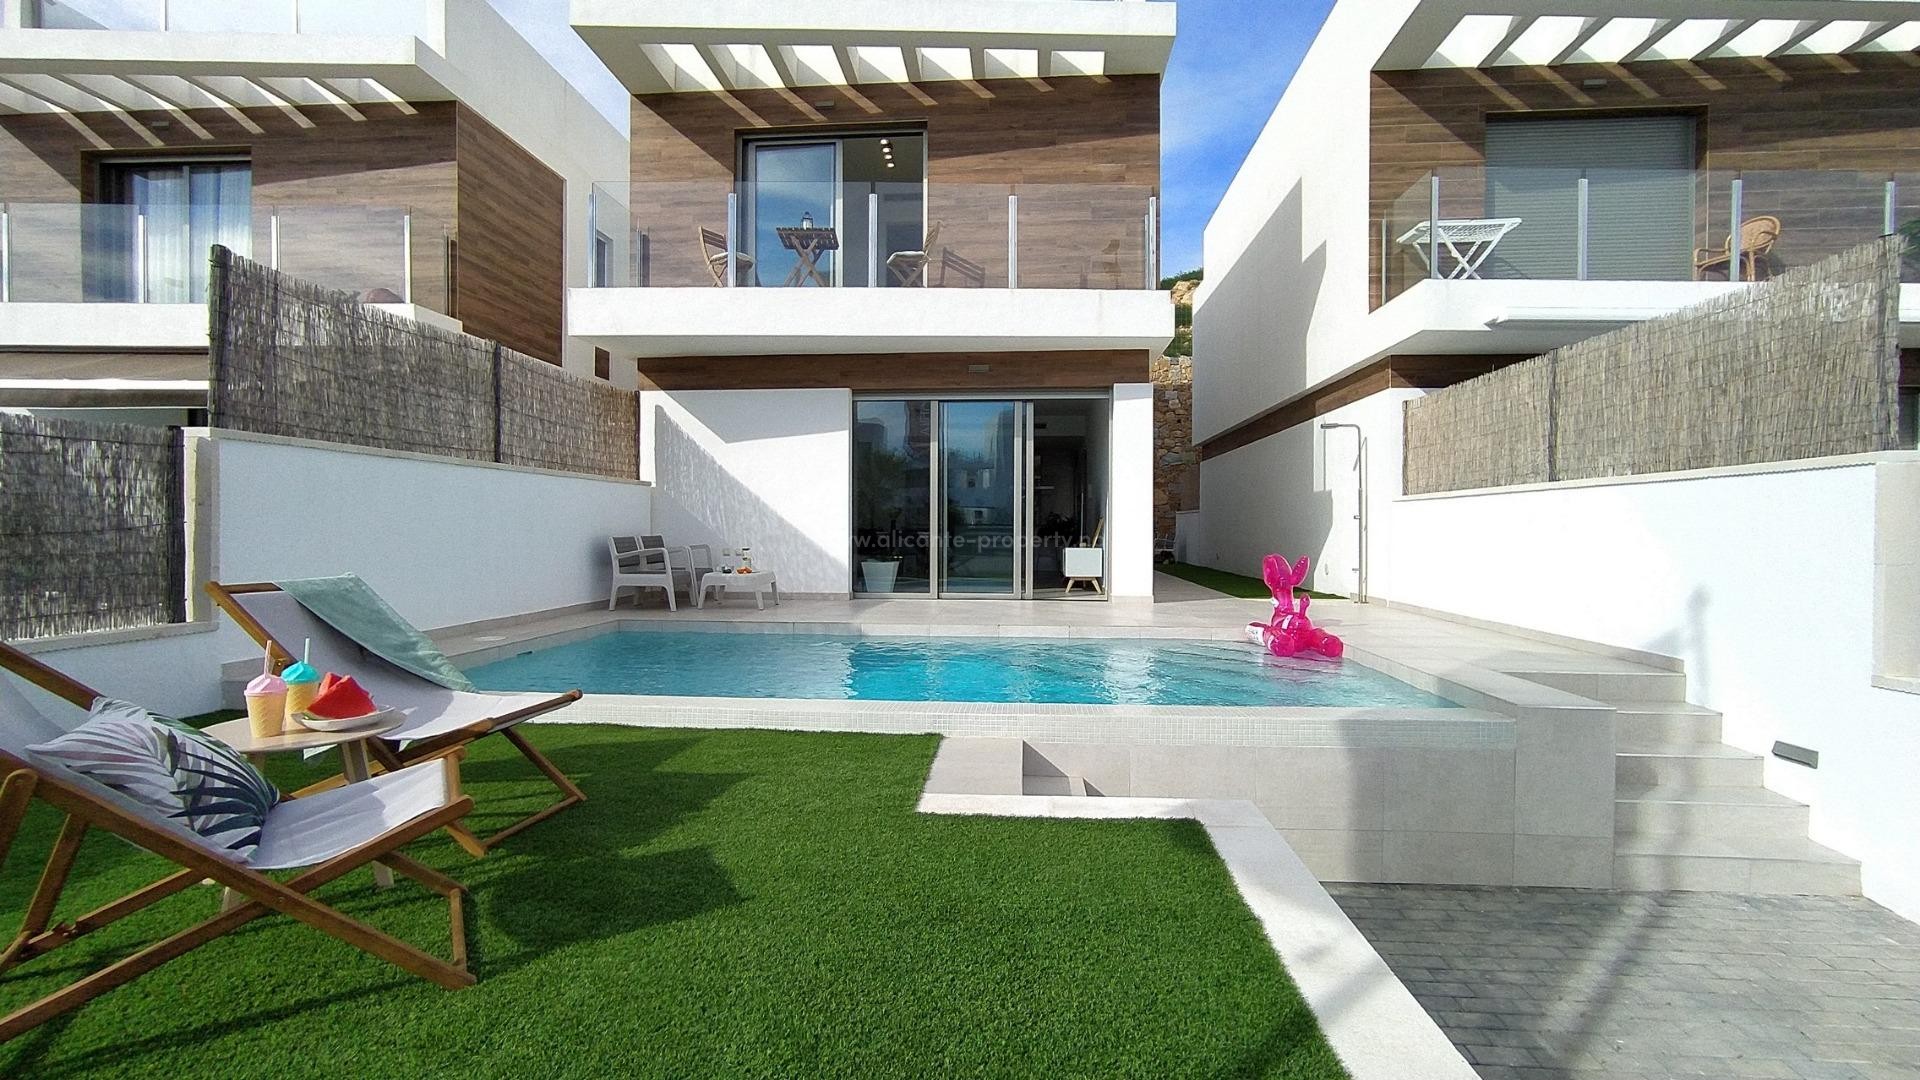 Moderne hus/villaer i Villamartin, 3 soverom, 4 bad, hage med basseng, solarium, nær flere fine golfbaner